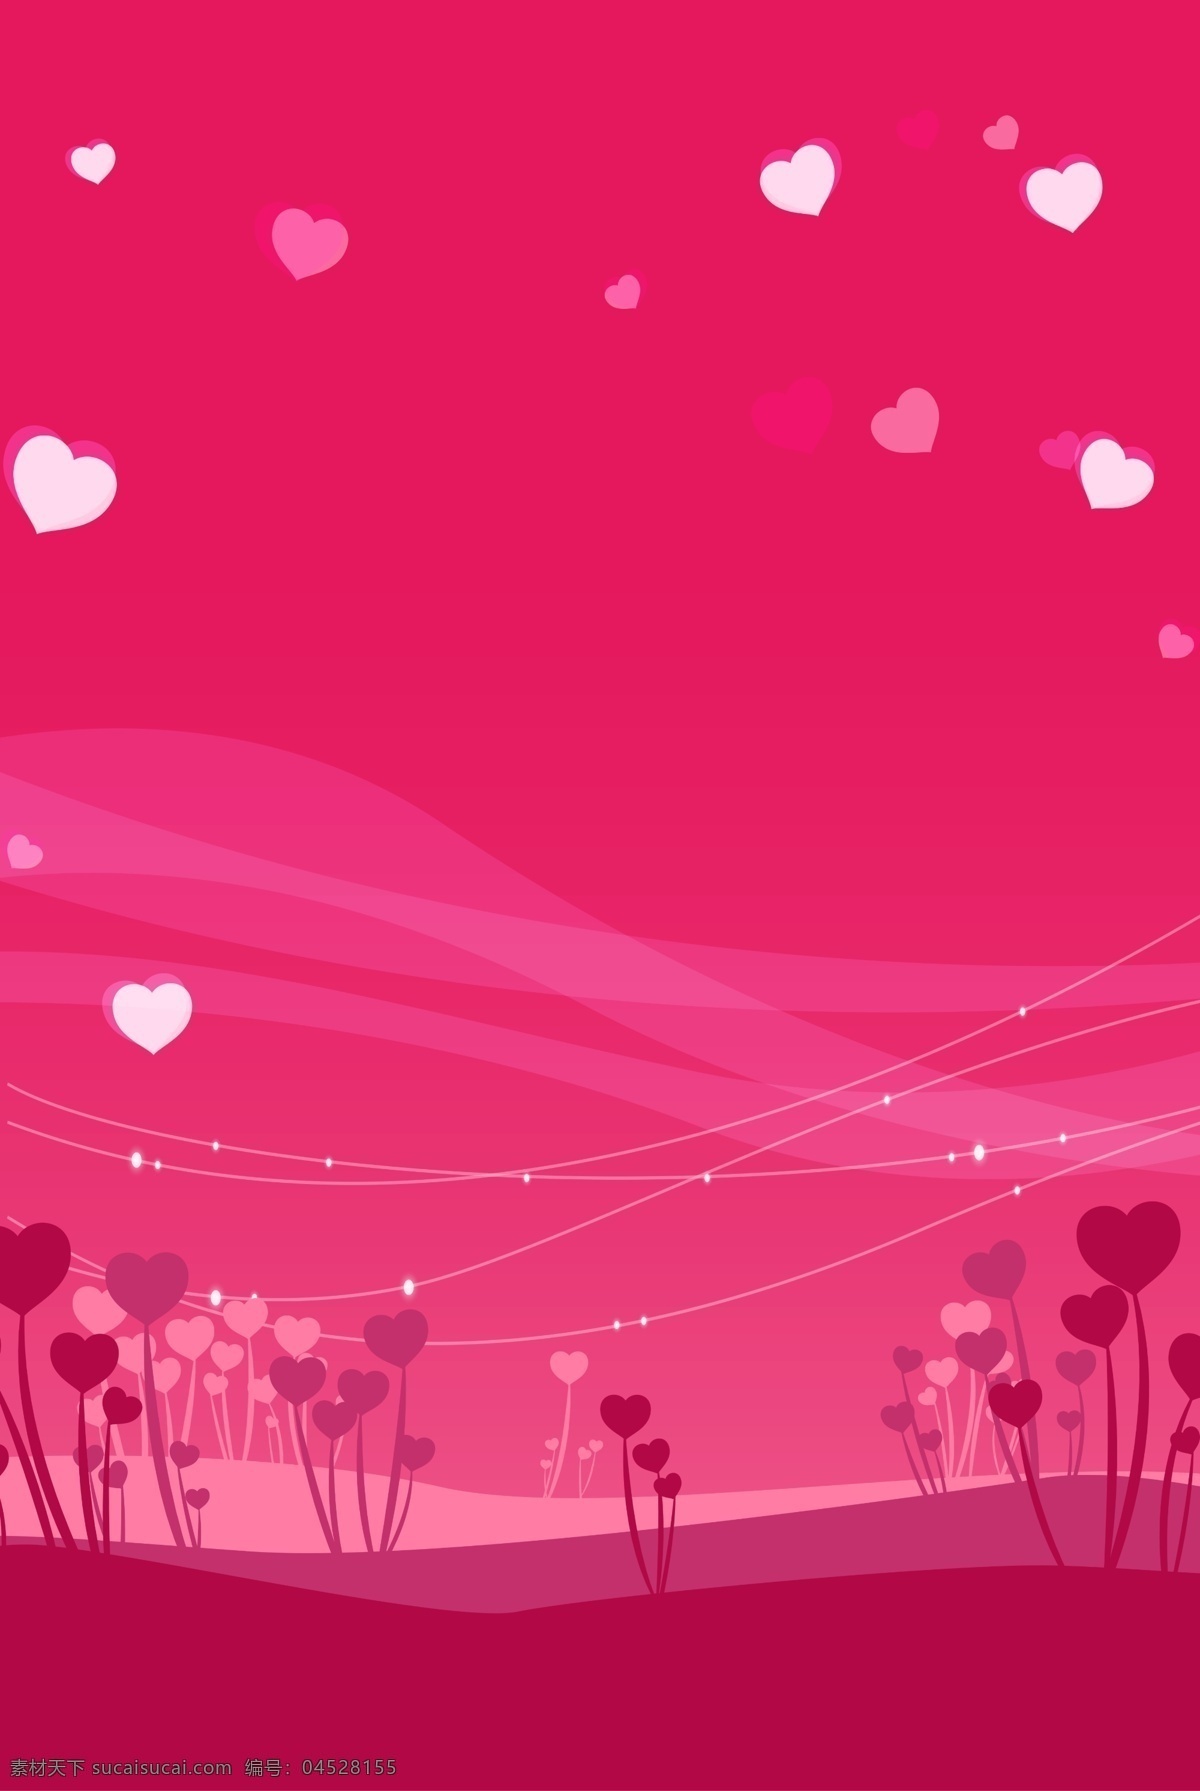 粉红 卡通 抽象 桃 心树 背景 2018最新 粉红色 简约 桃心 形象 情人节 婚庆 甜蜜 爱情 海报 促销 活动